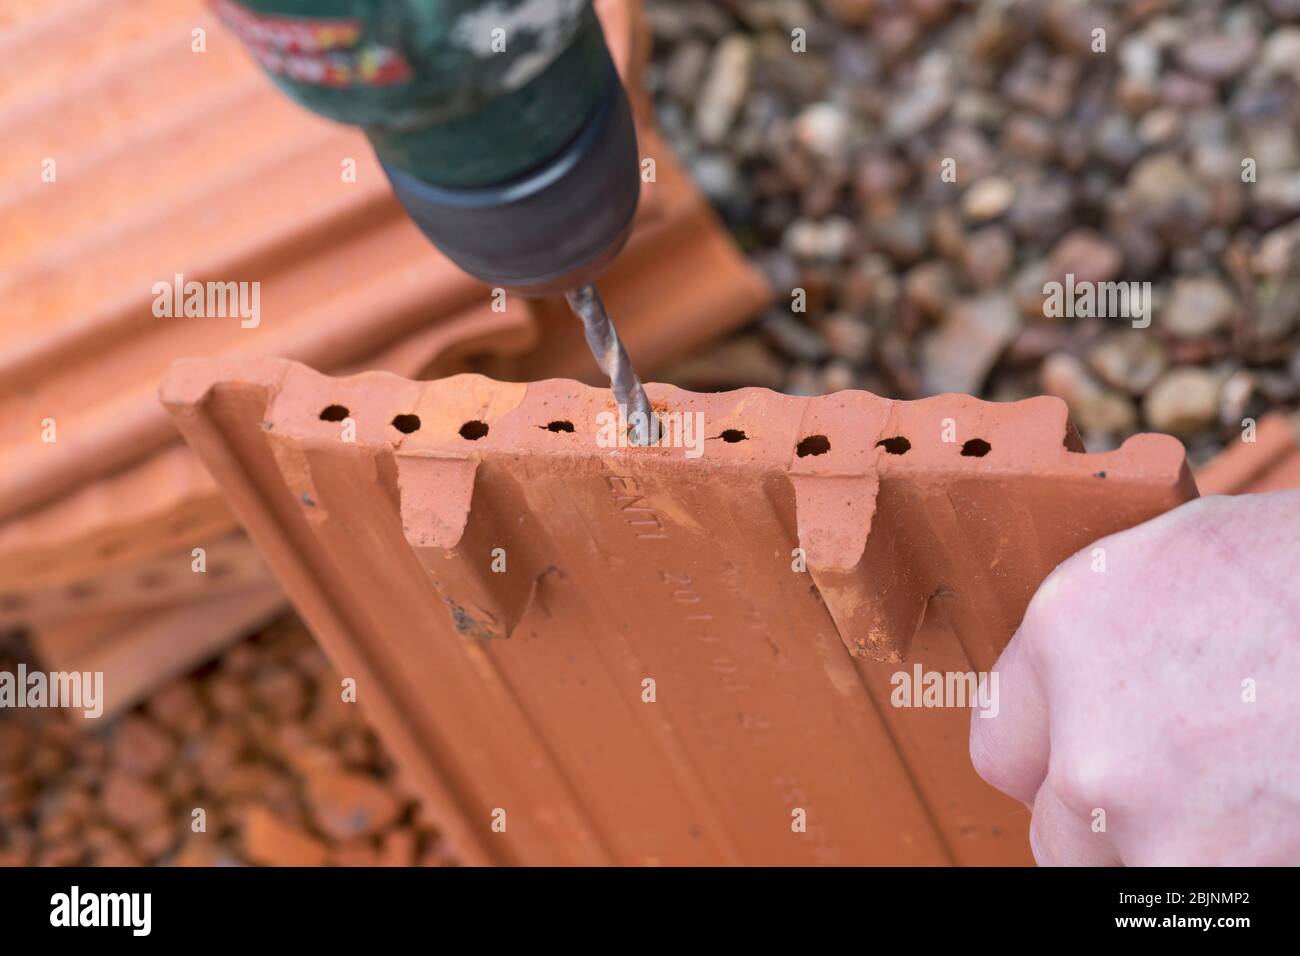 Aide à la nidification pour les abeilles sauvages, tuile interloquante, étape 2: Bord du lissage des trous par un foret, Allemagne Banque D'Images